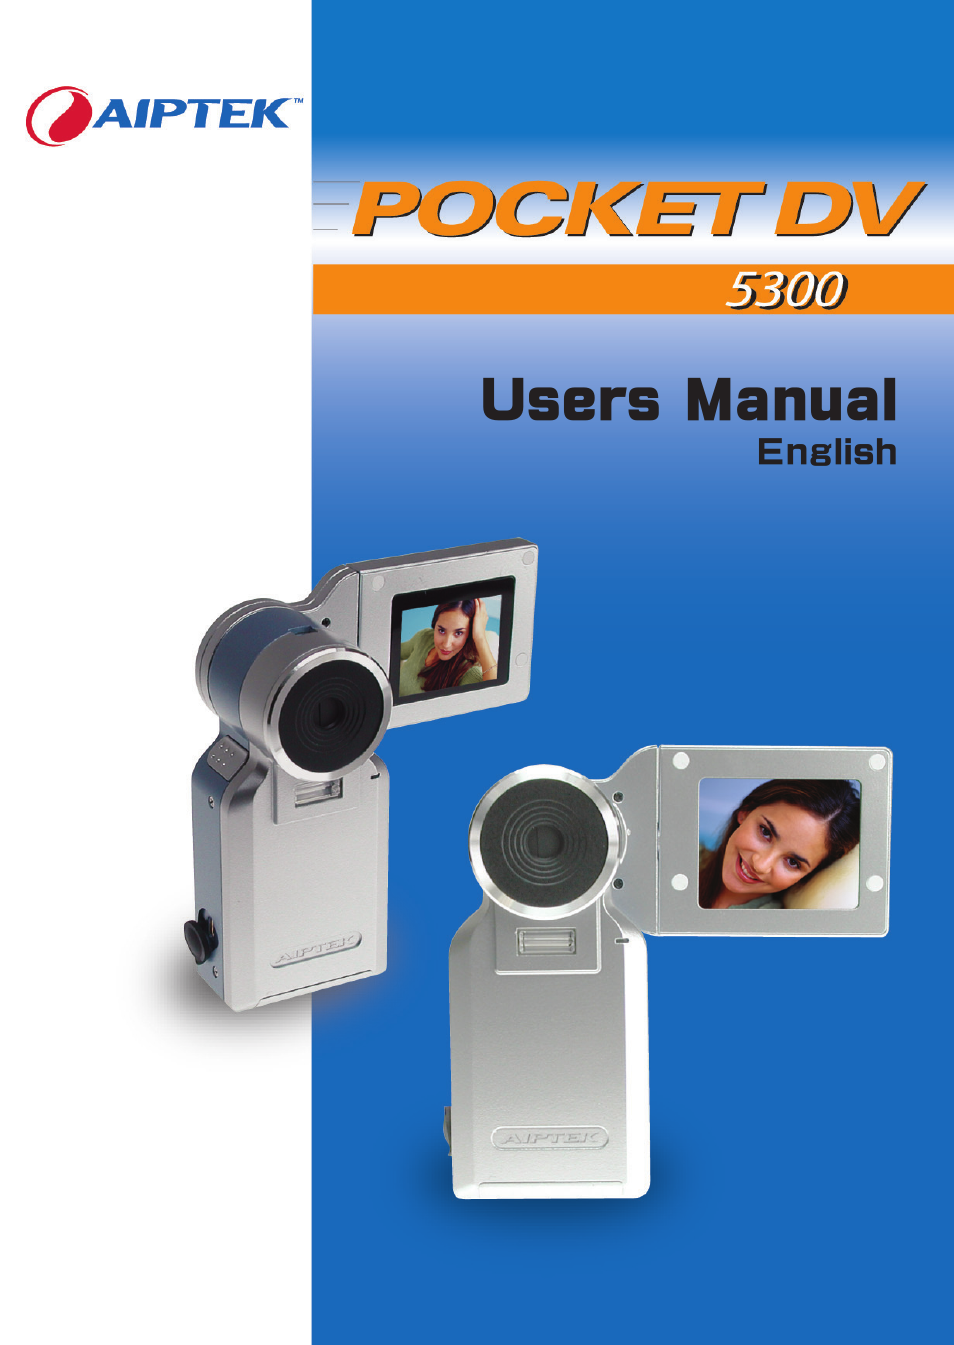 AIPTEK Pocket DV 5300 User Manual | 57 pages